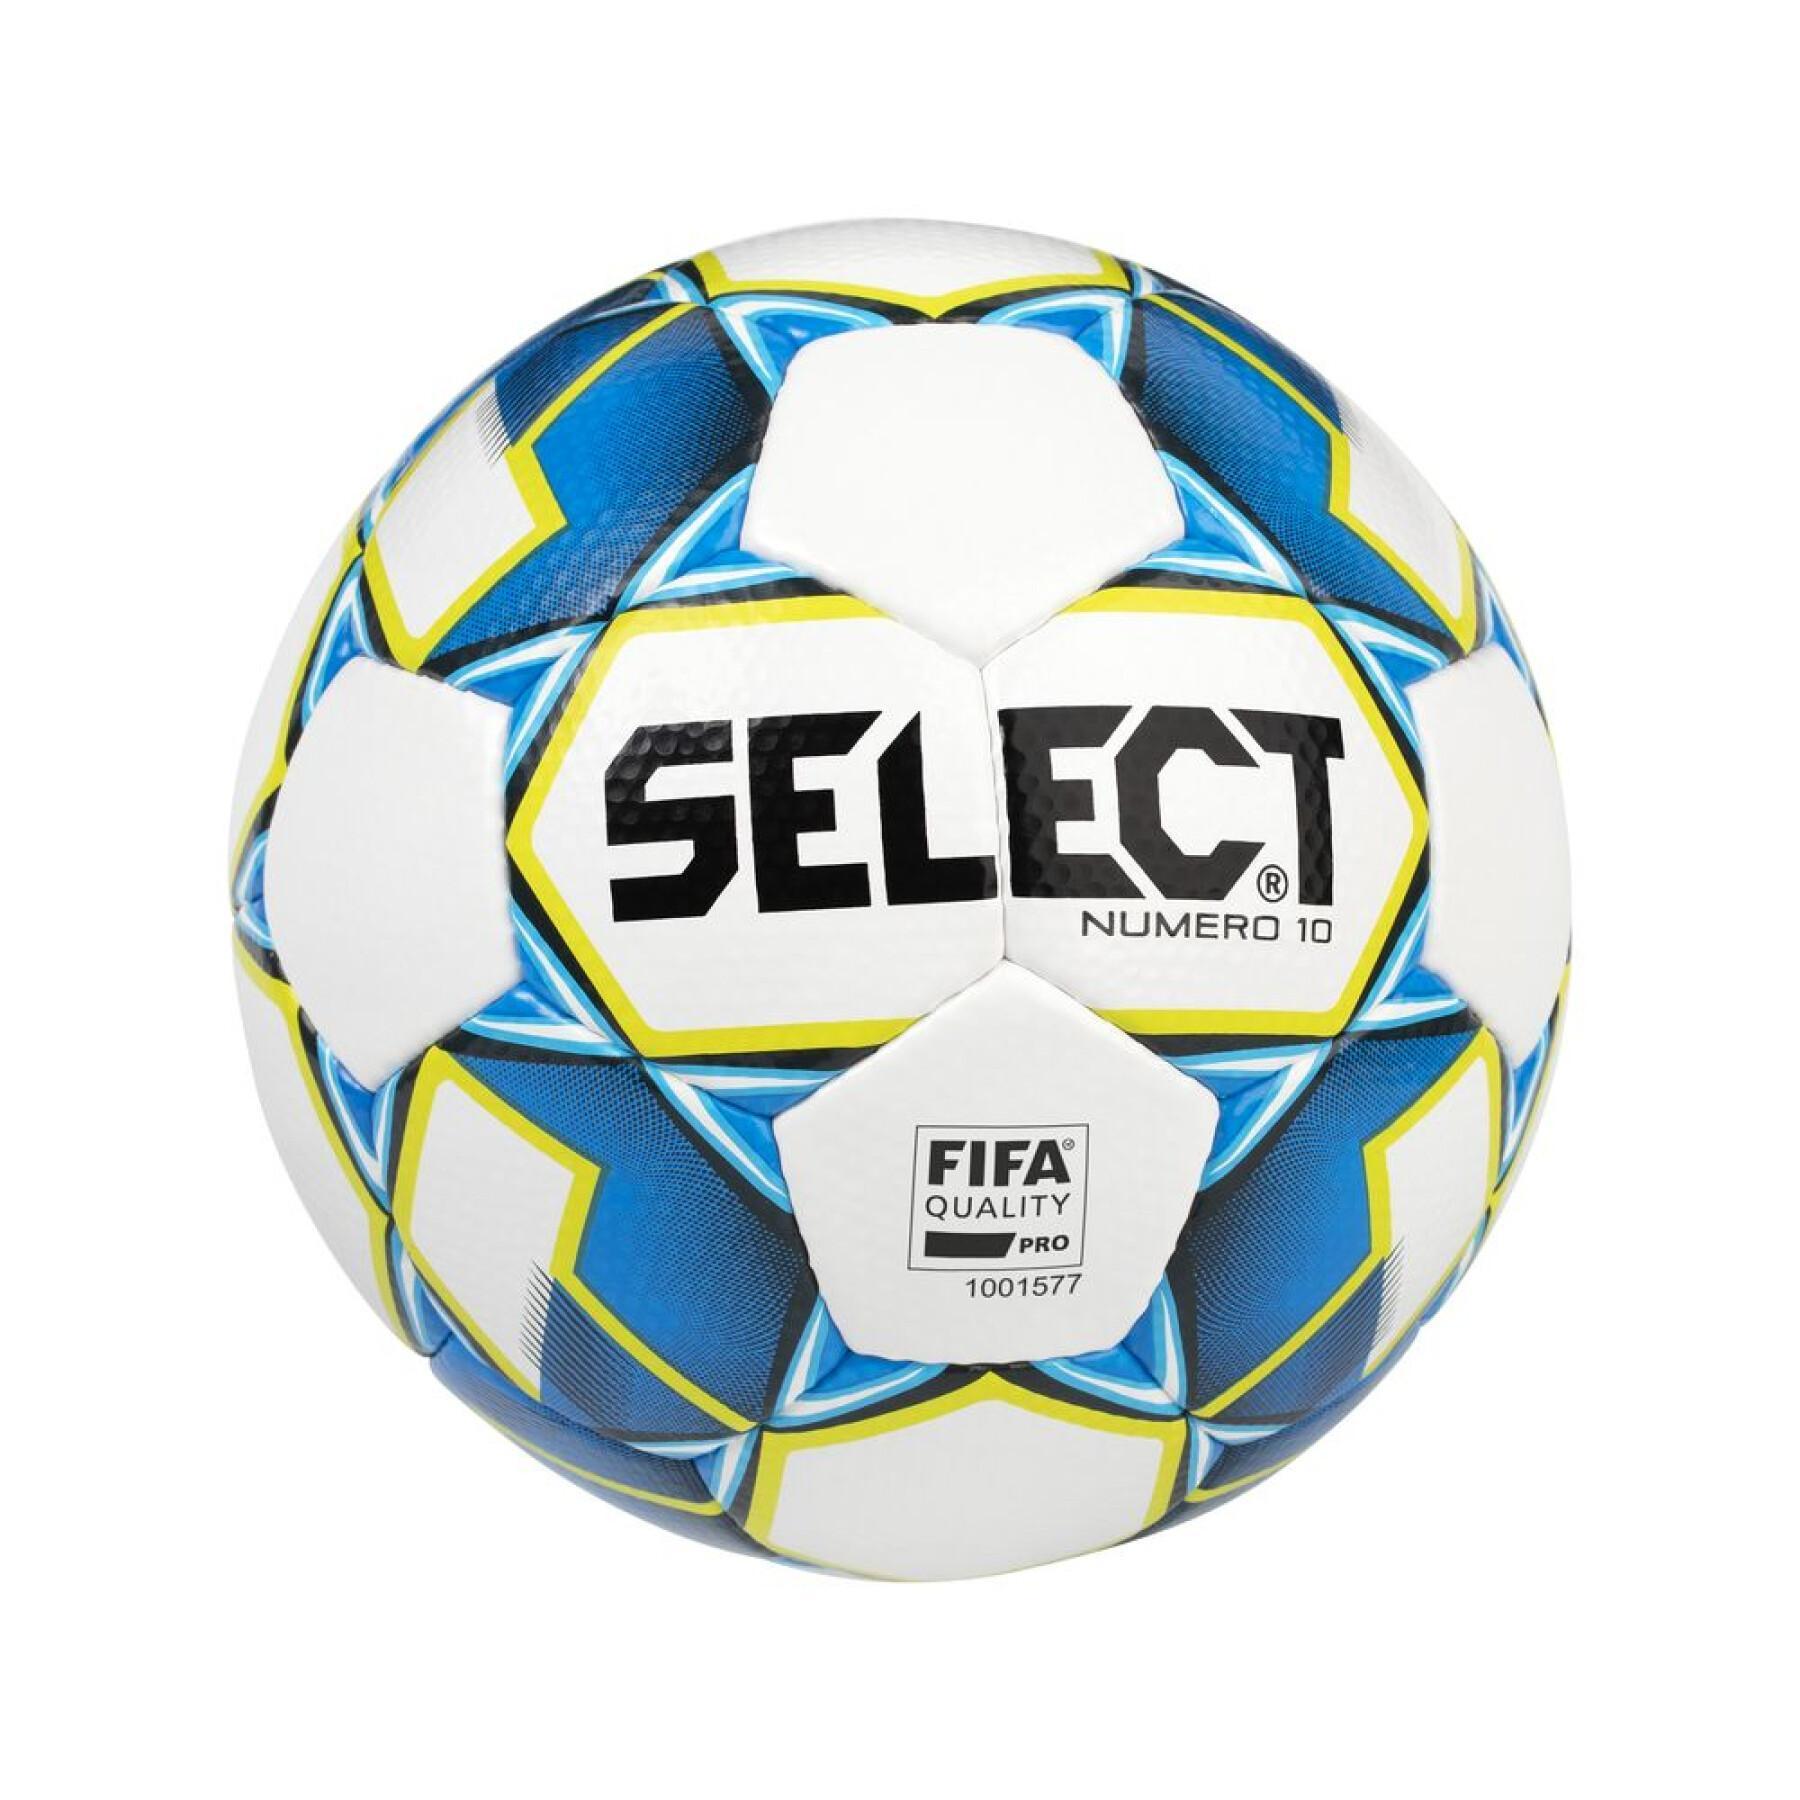 Balón Select número 10 FIFA